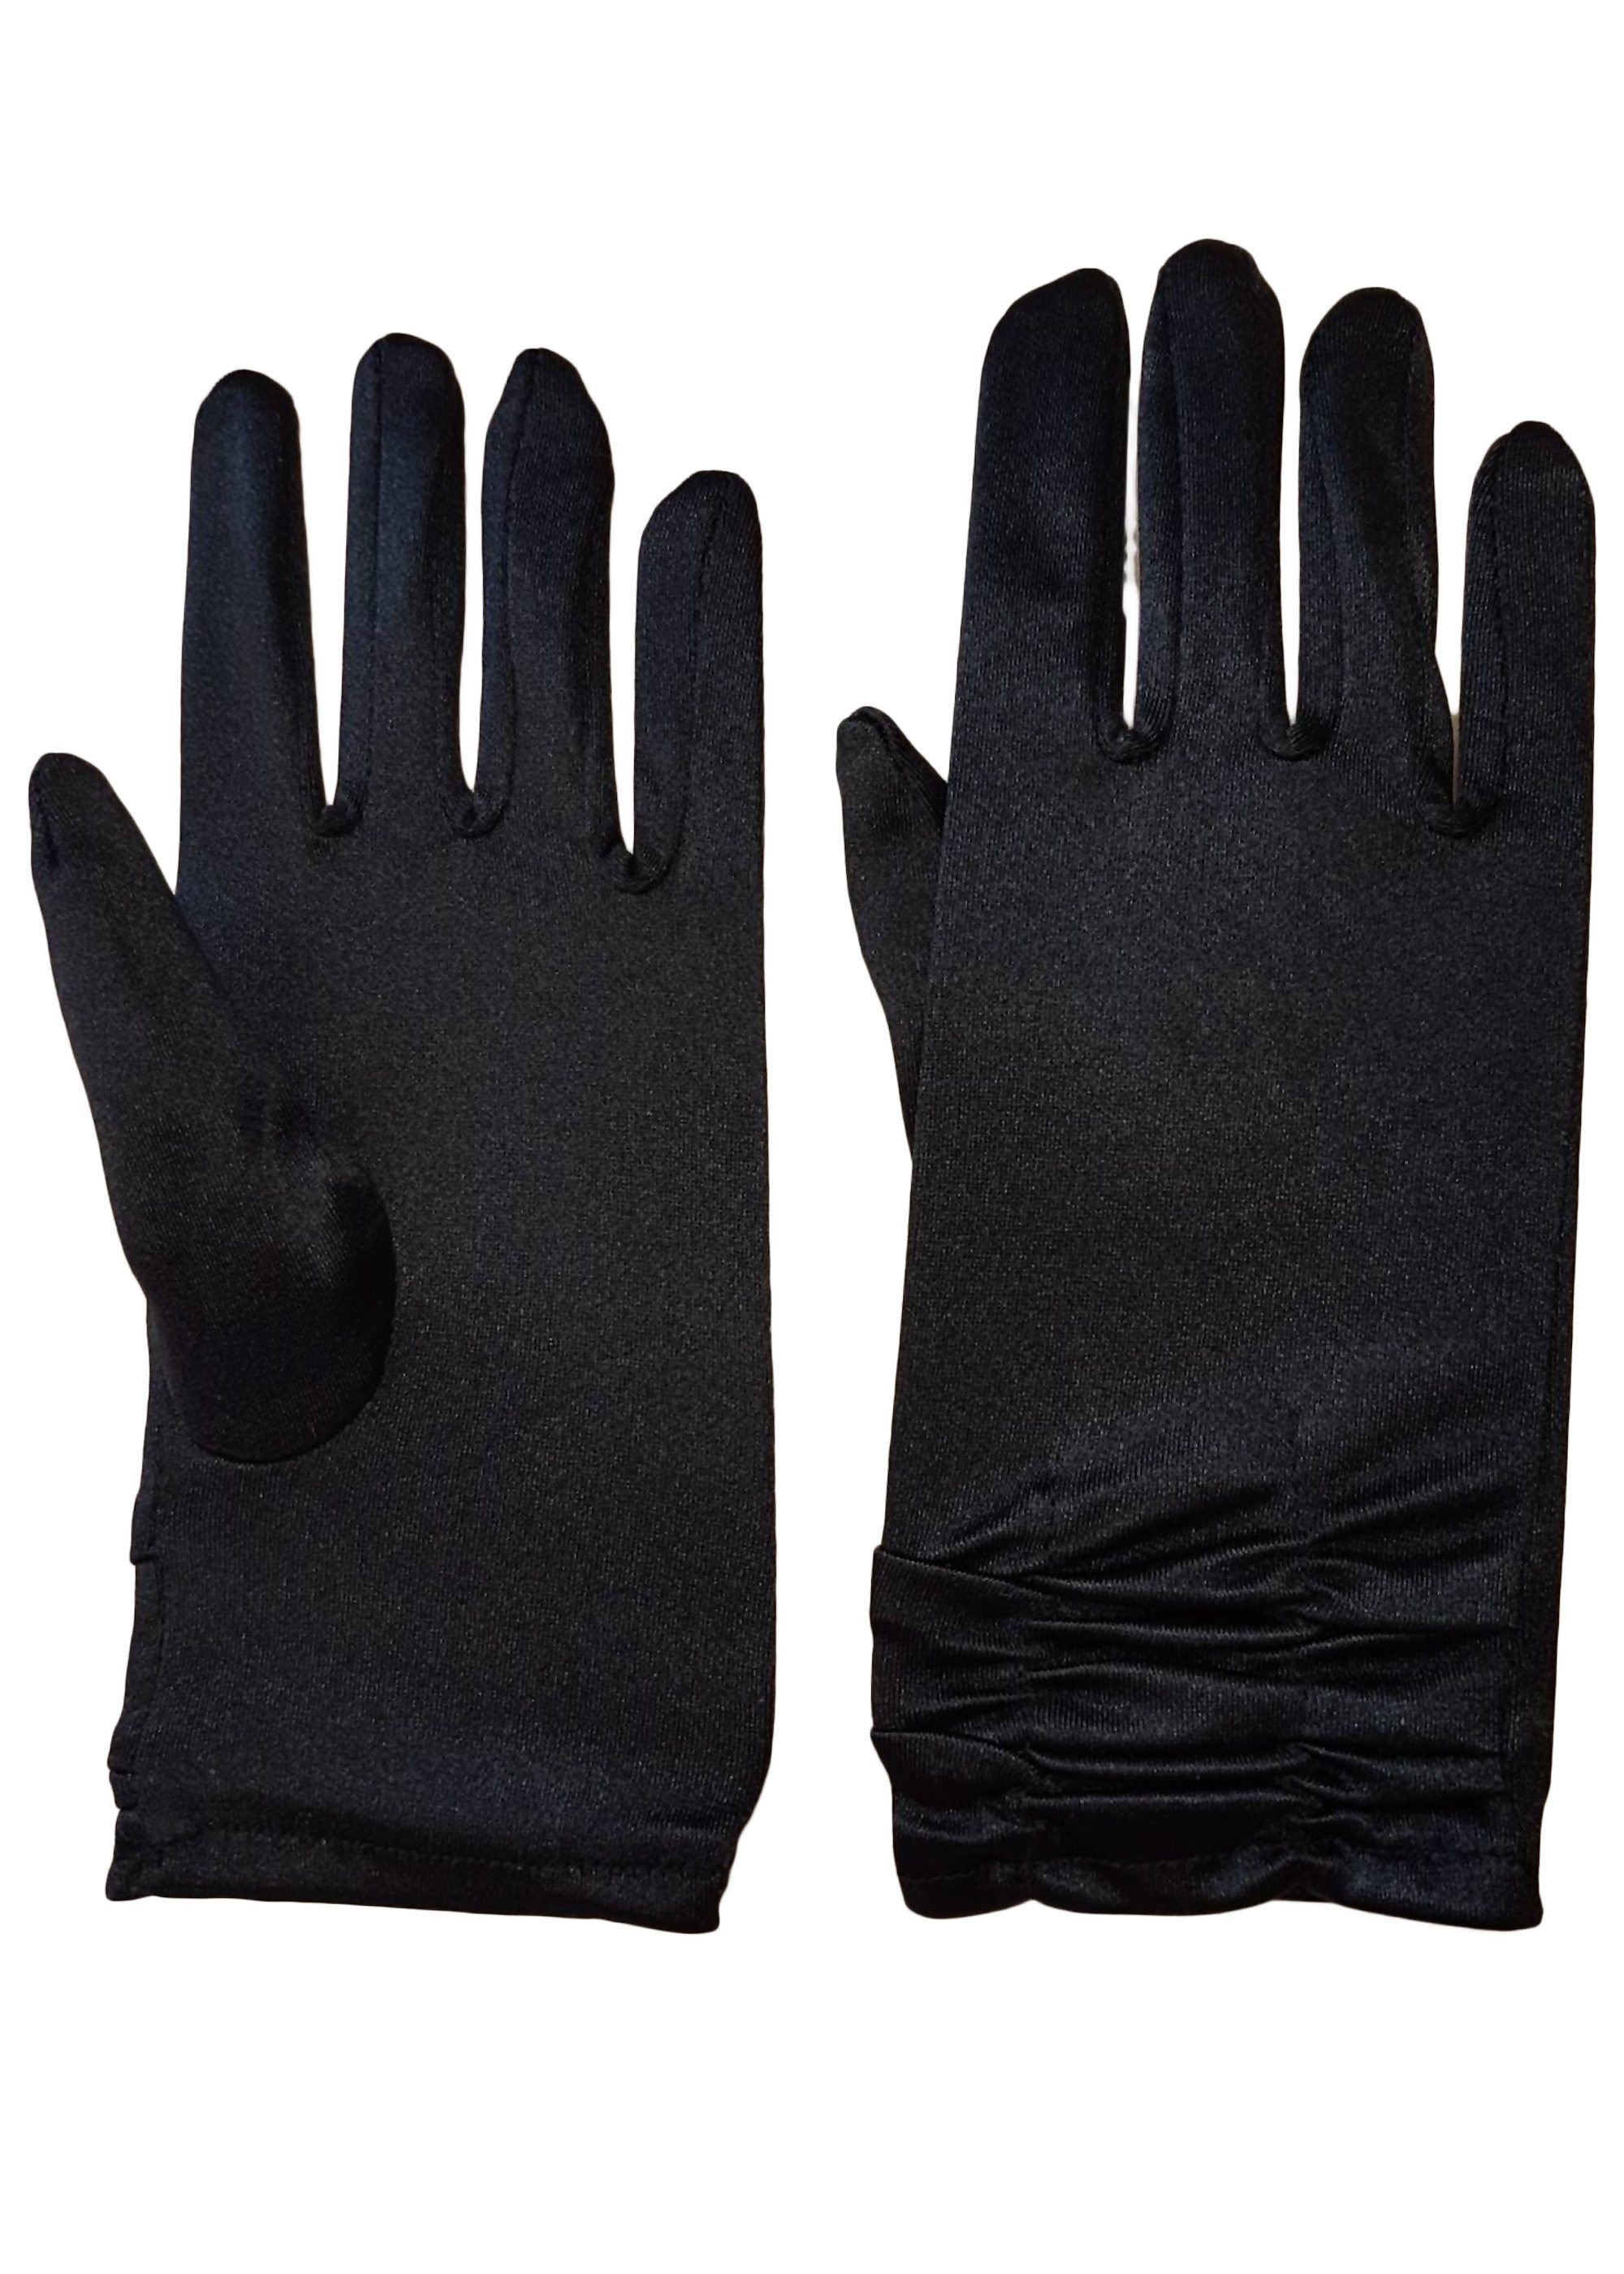 Family Trends Abendhandschuhe Satin Damen Handschuhe kurz mit Raffung dehnbar im Satin-Look schwarz